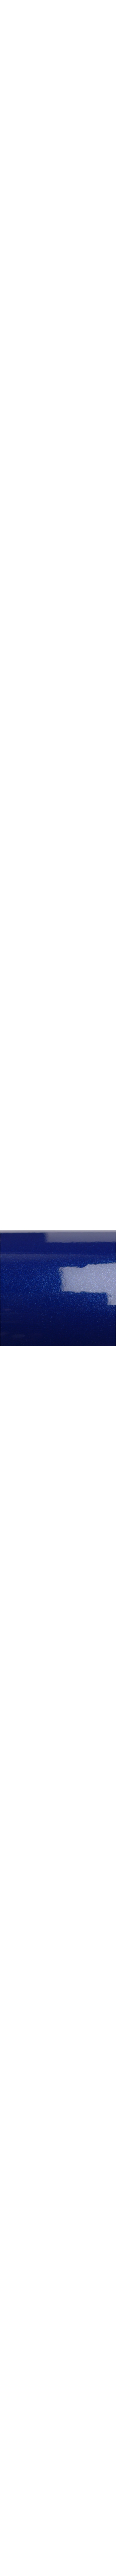 2080-G217 Deep blue metallic en 1.524m x 22.86ml